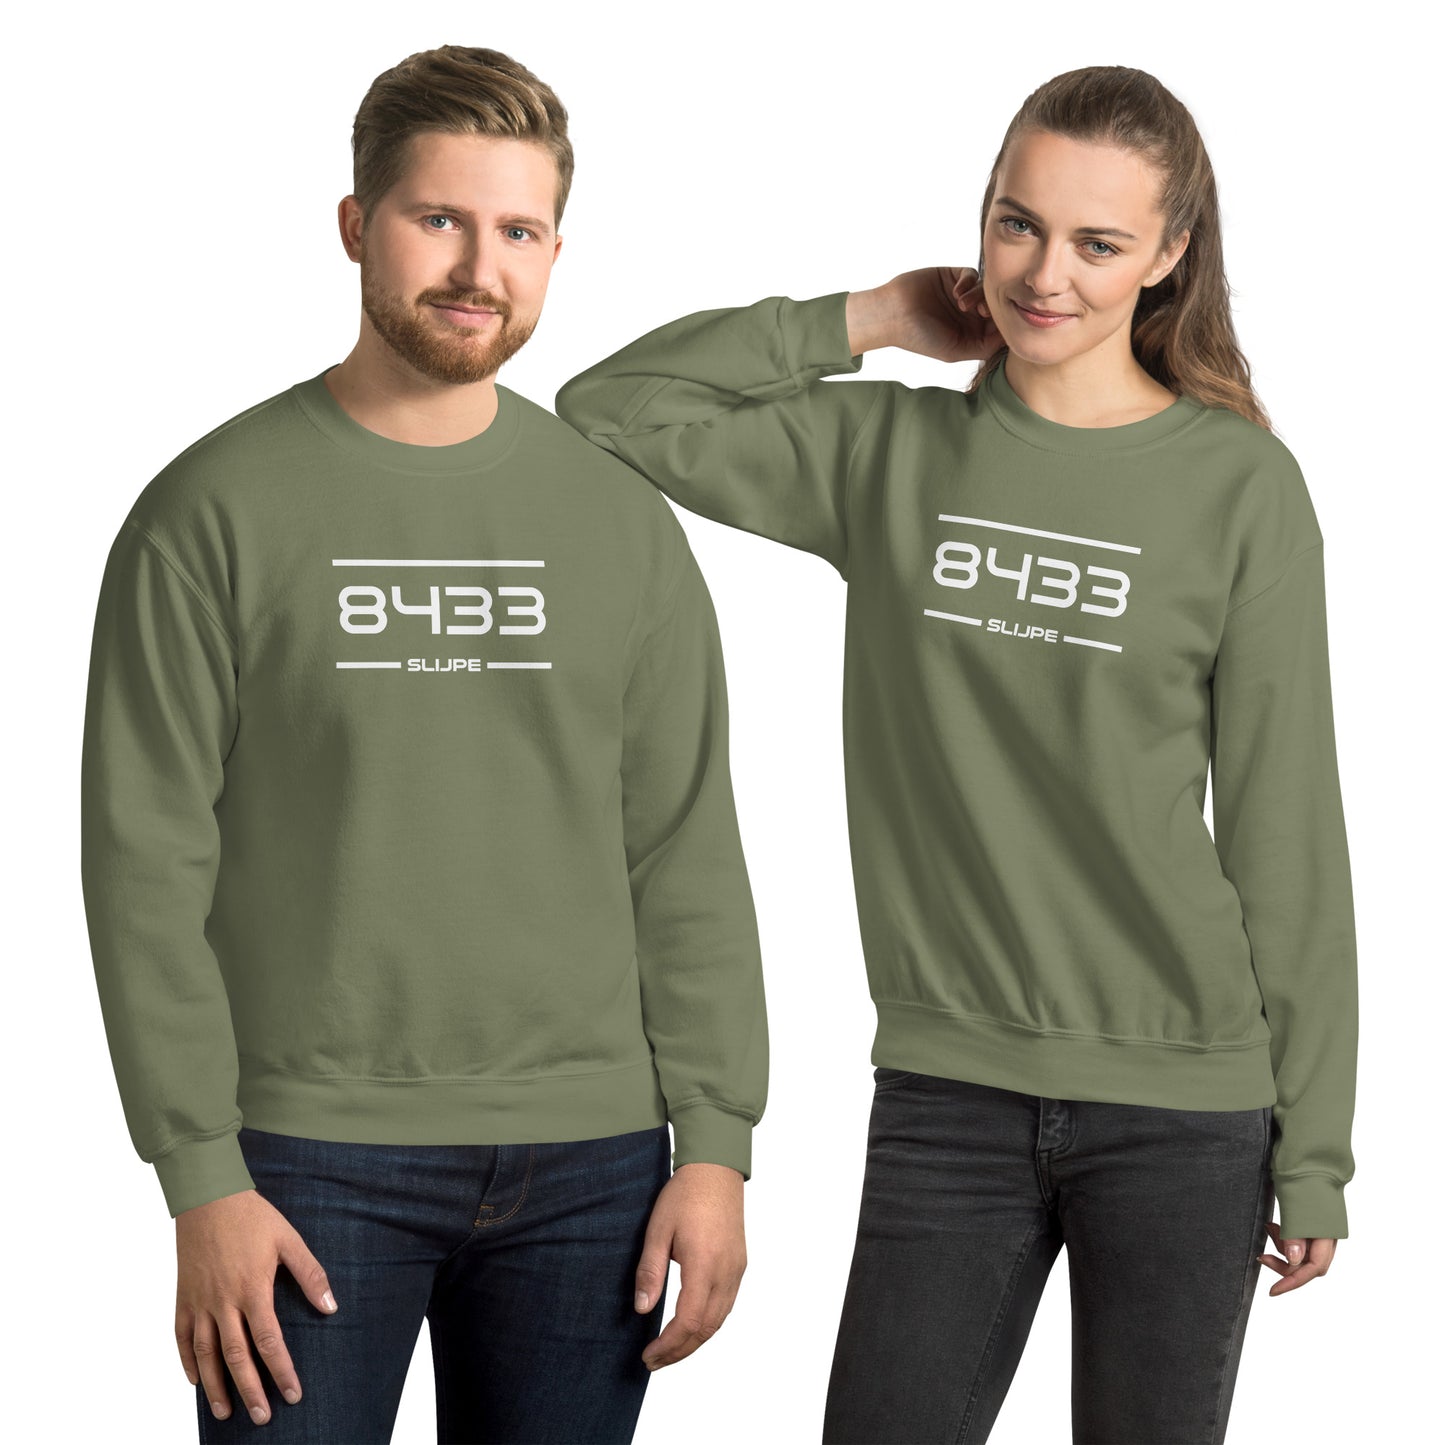 Sweater - 8433 - Slijpe (M/V)